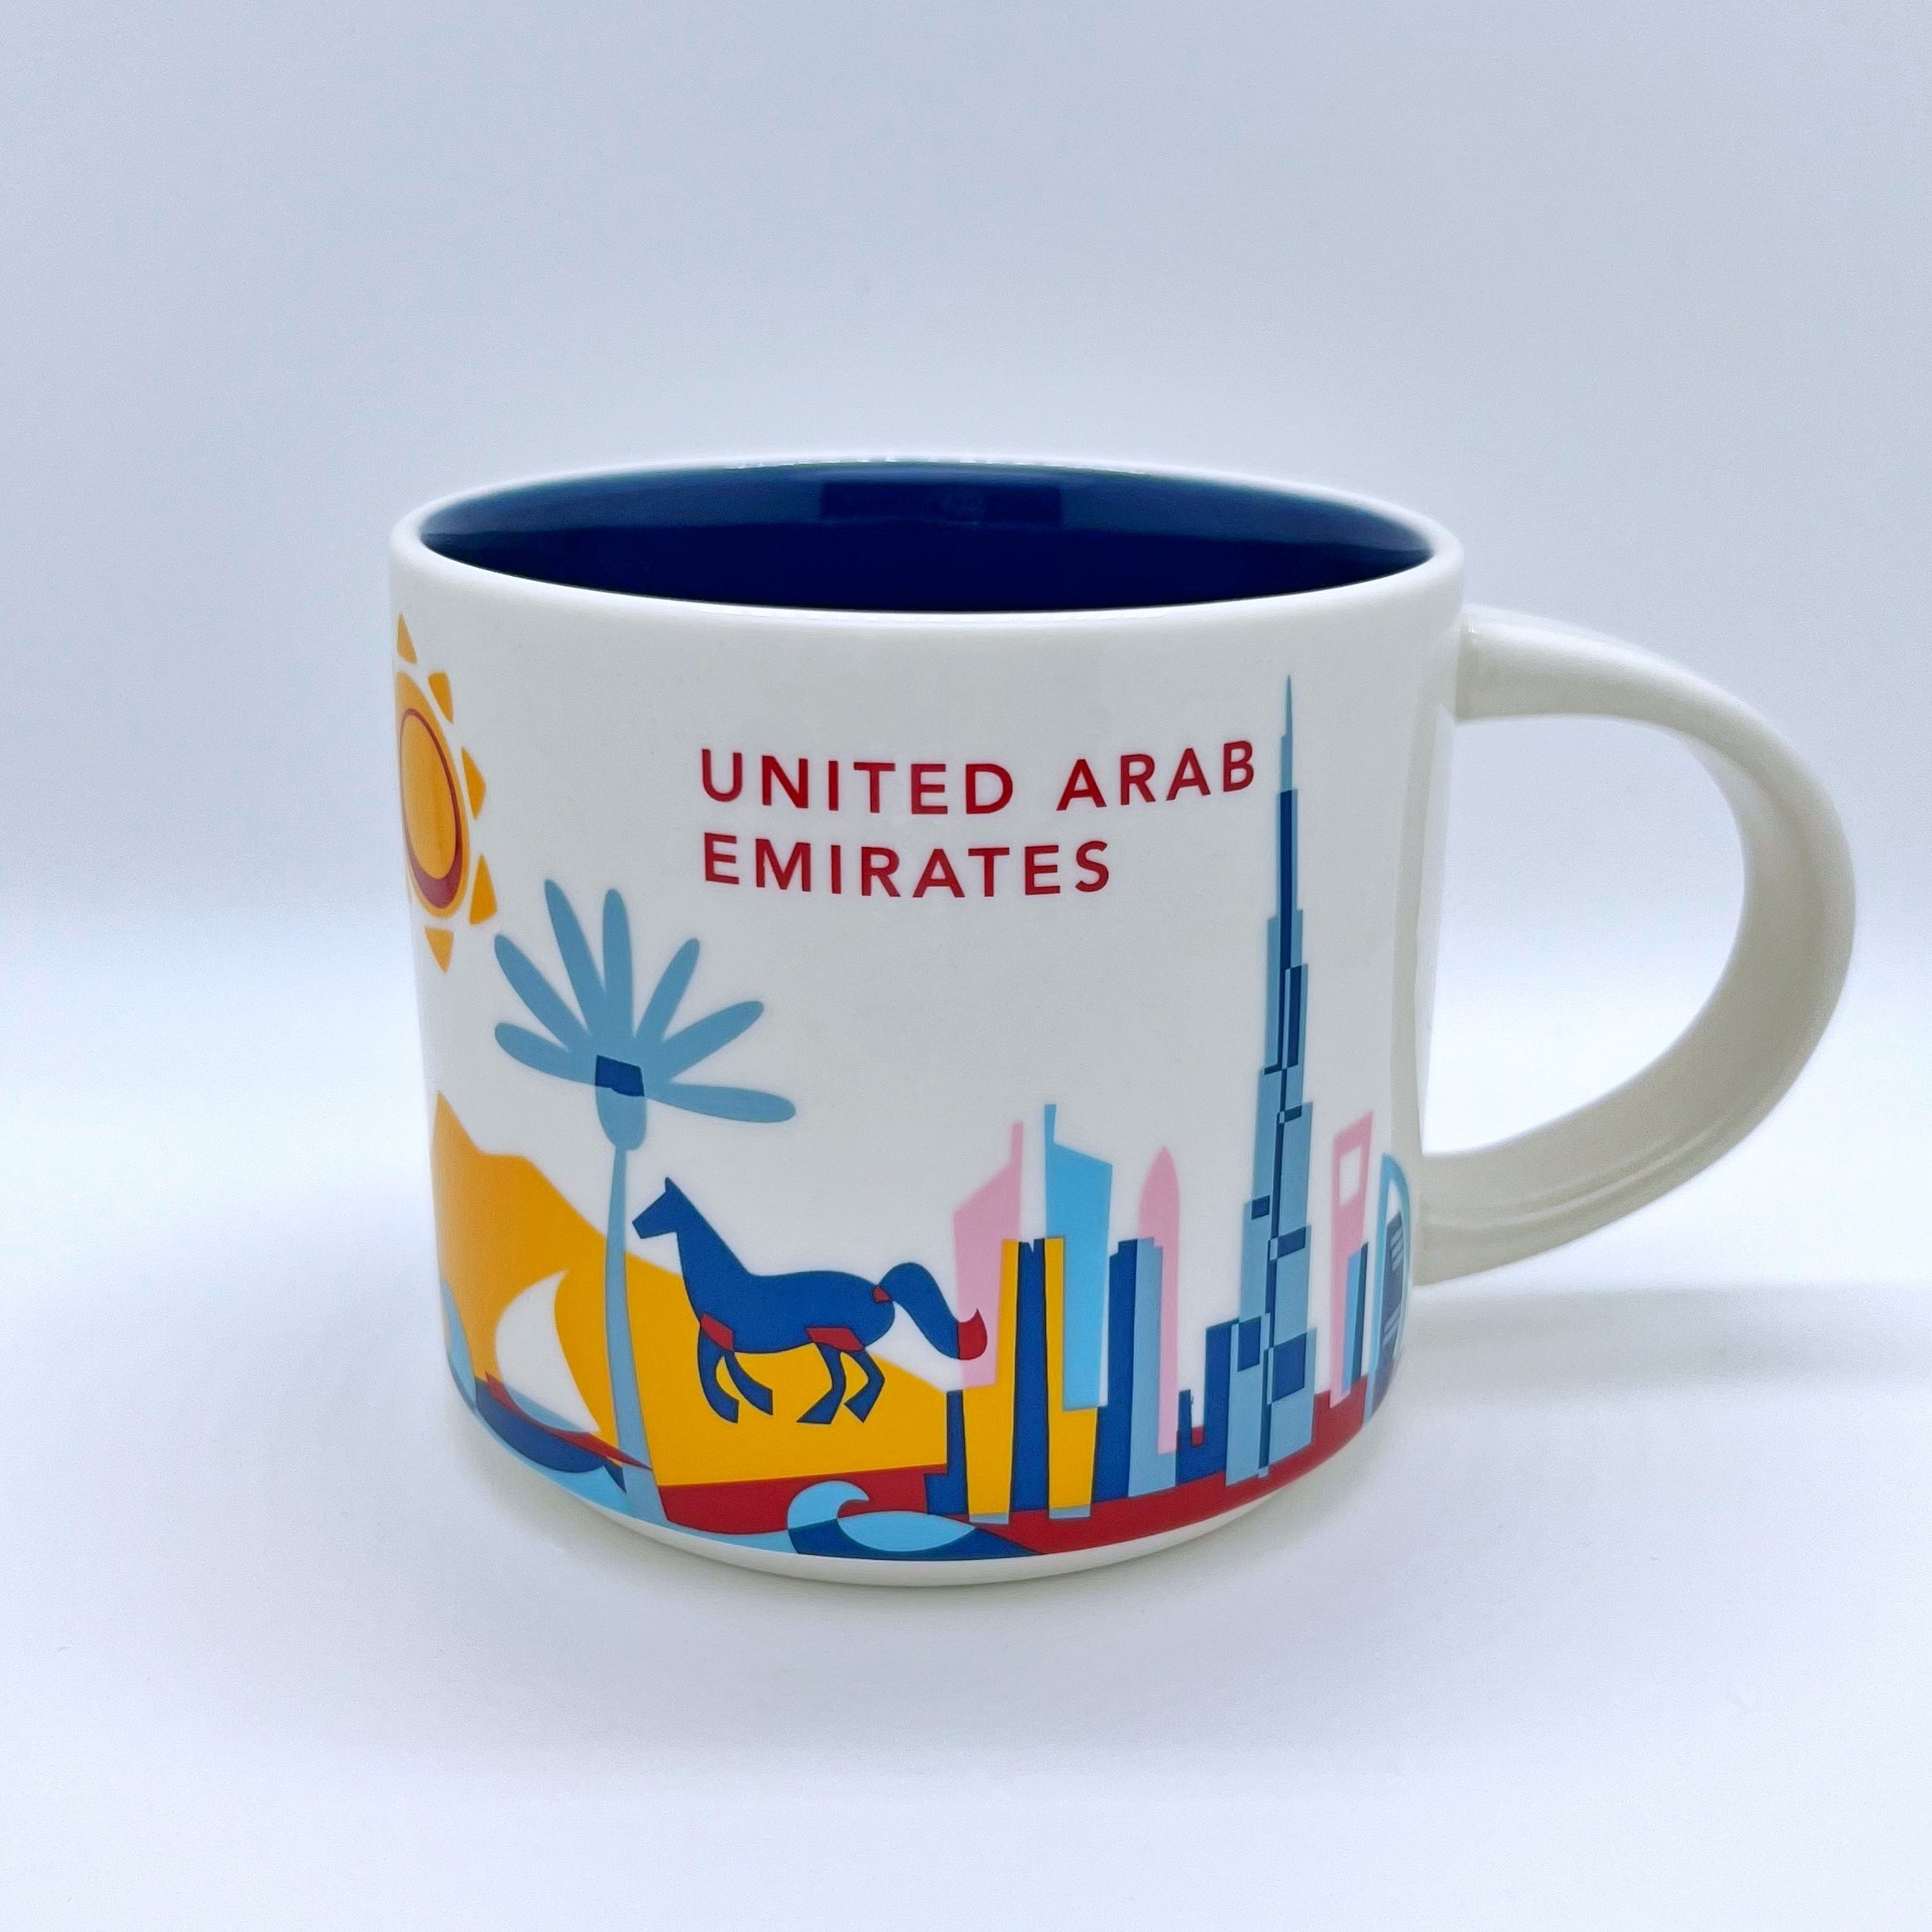 Kaffee Tee und Cappuccino Tasse von Starbucks mit gemalten Bildern aus den Vereinigten Arabischen Emiraten